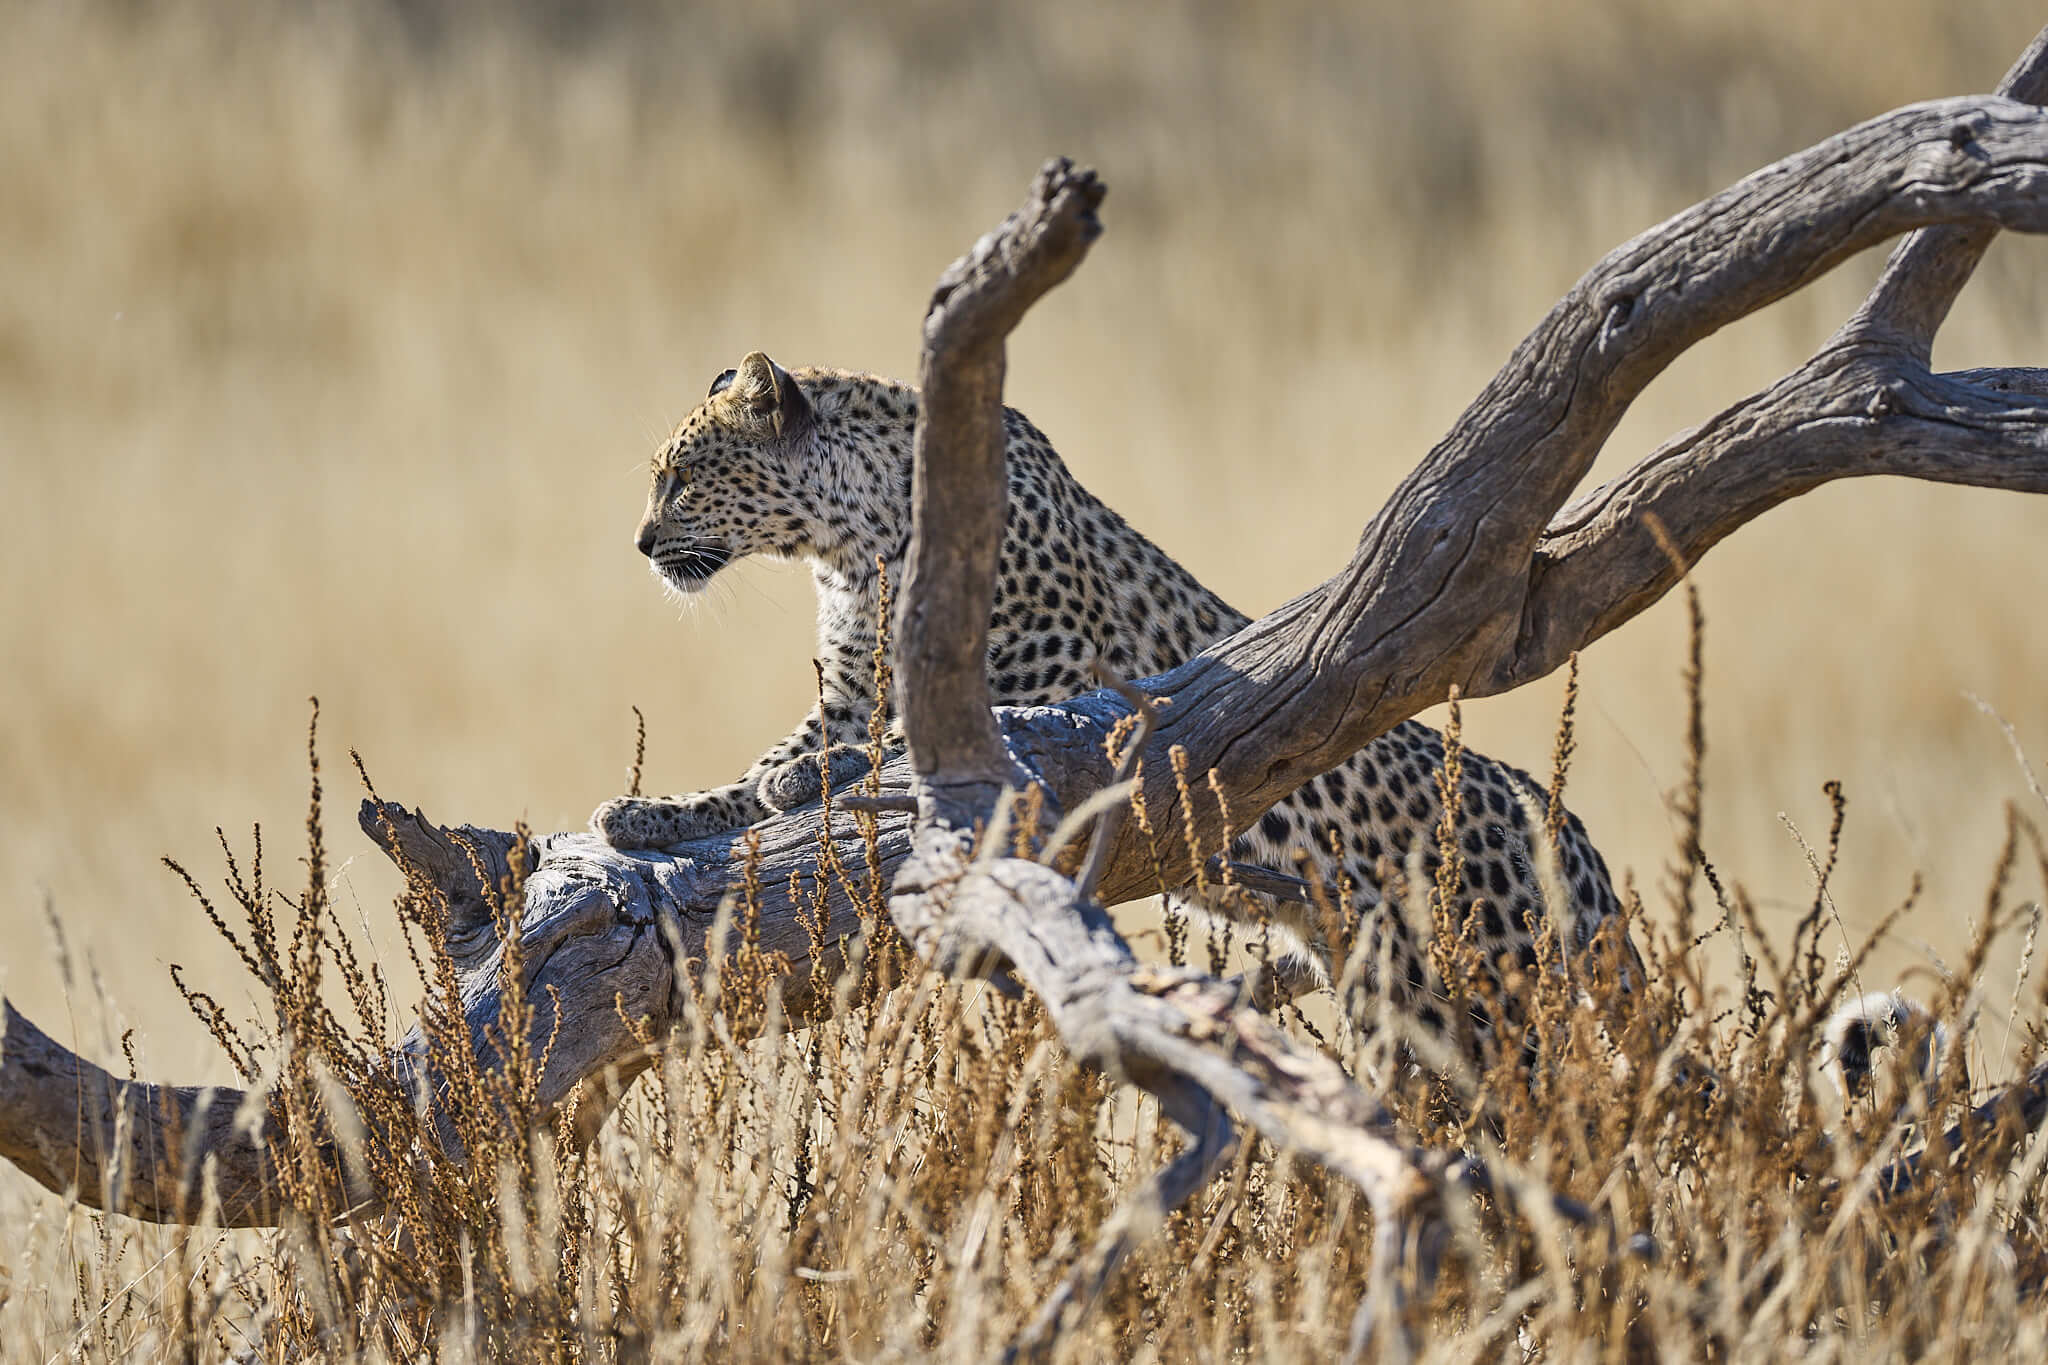 Das Bild zeigt einen Leoparden auf einem Baumstamm